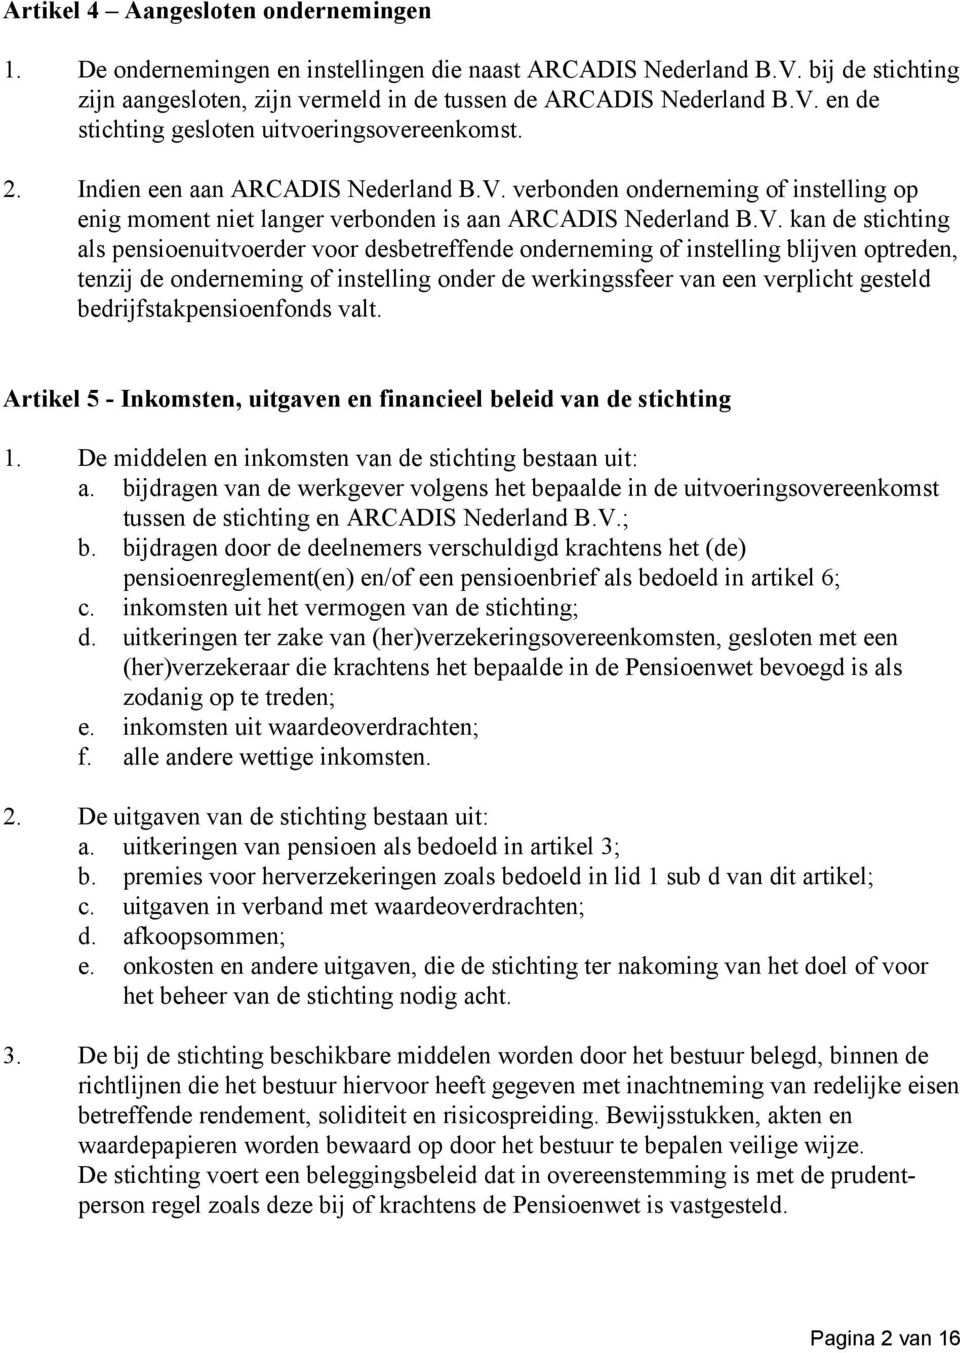 verbonden onderneming of instelling op enig moment niet langer verbonden is aan ARCADIS Nederland B.V.